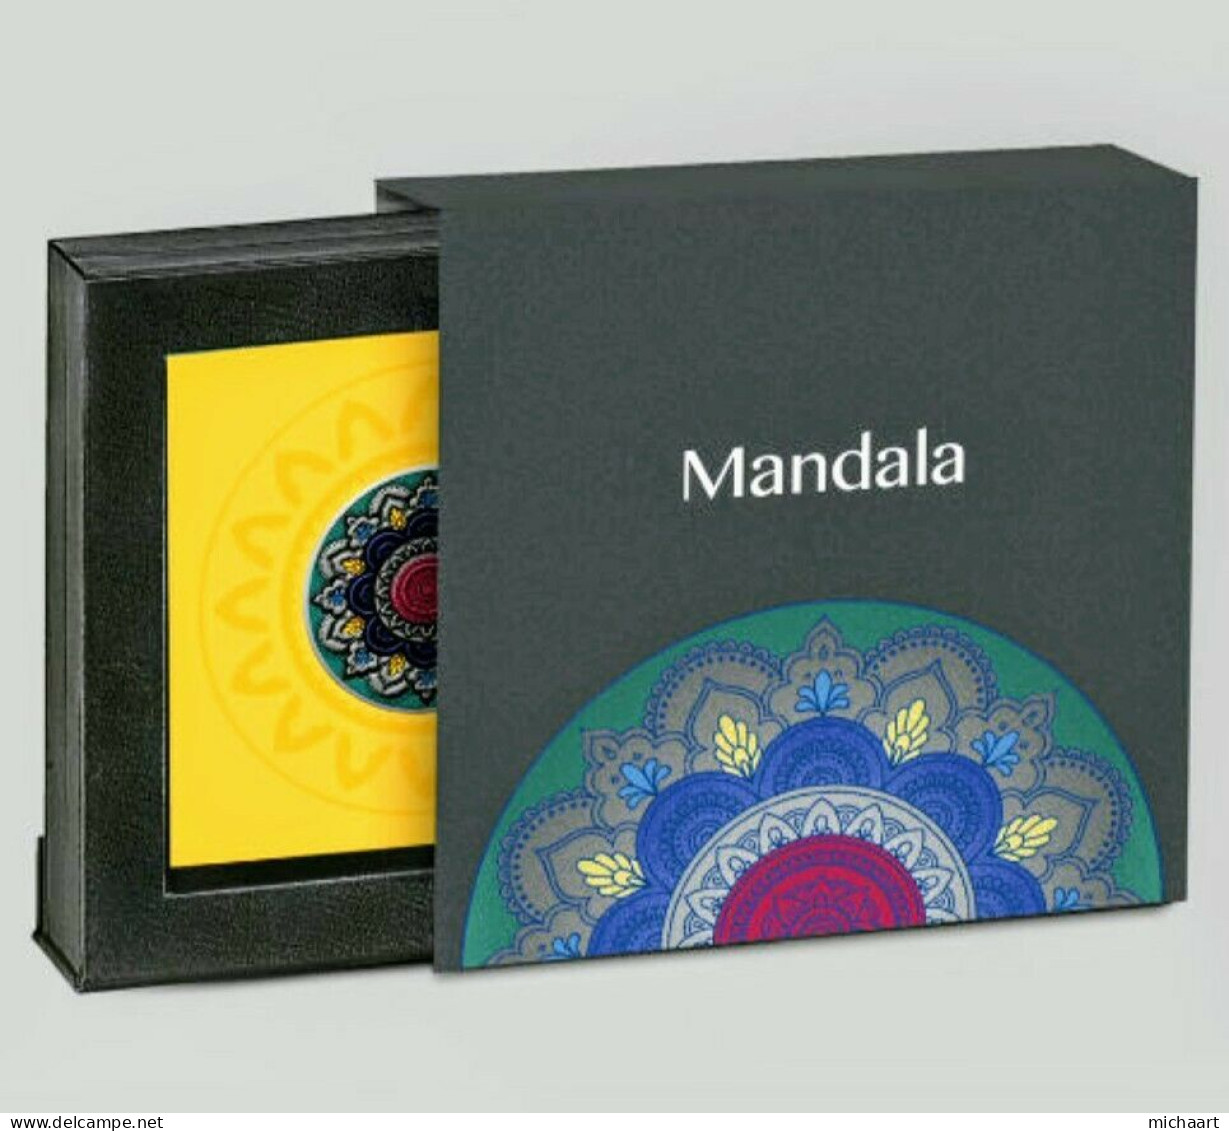 Cameroon Coin 2000 Francs 2019 Mandala Wheel Of Life 2 Oz Silver + Case 02187 - Camerun